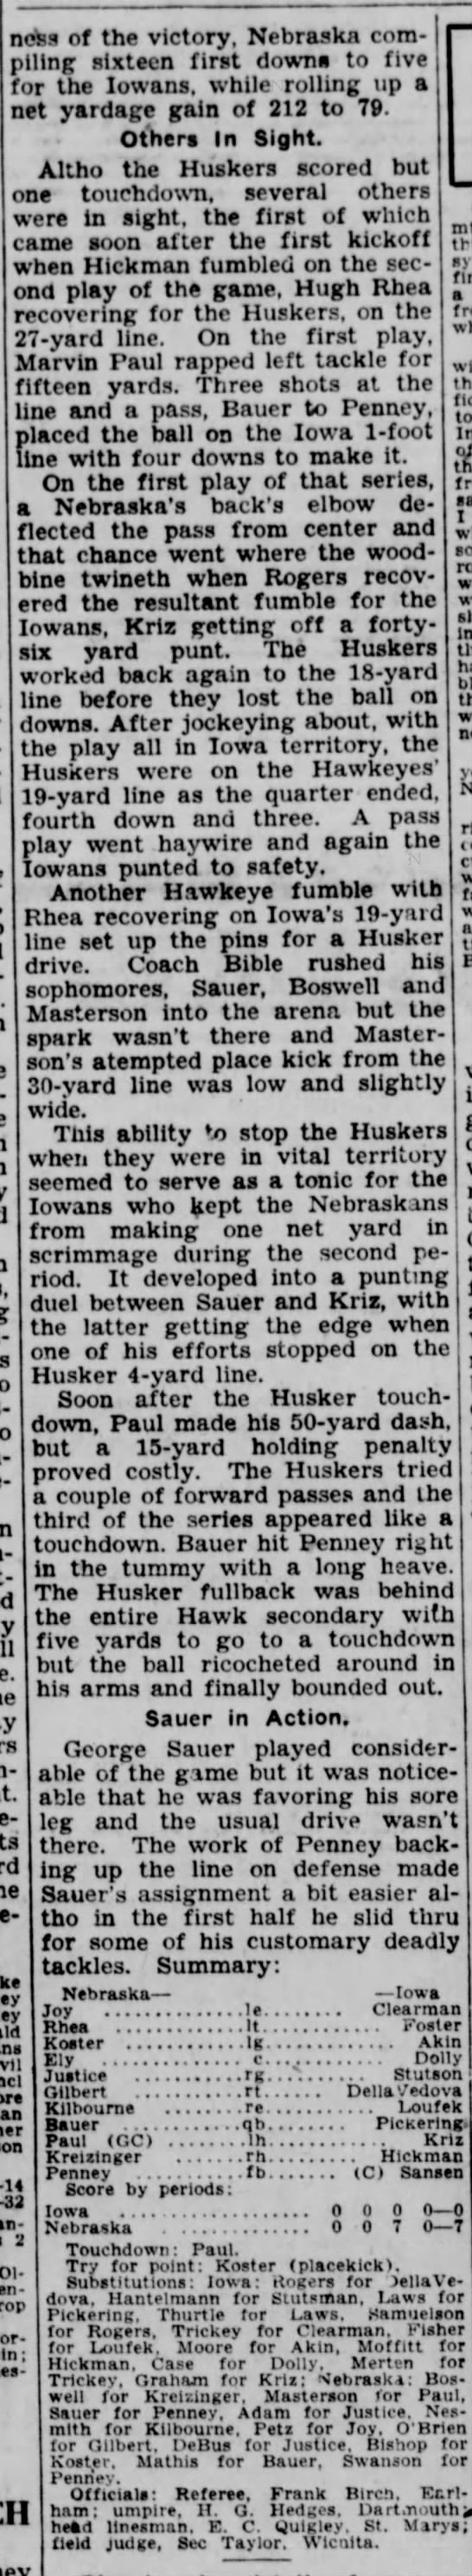 1931 Nebraska-Iowa football, part 3 - 